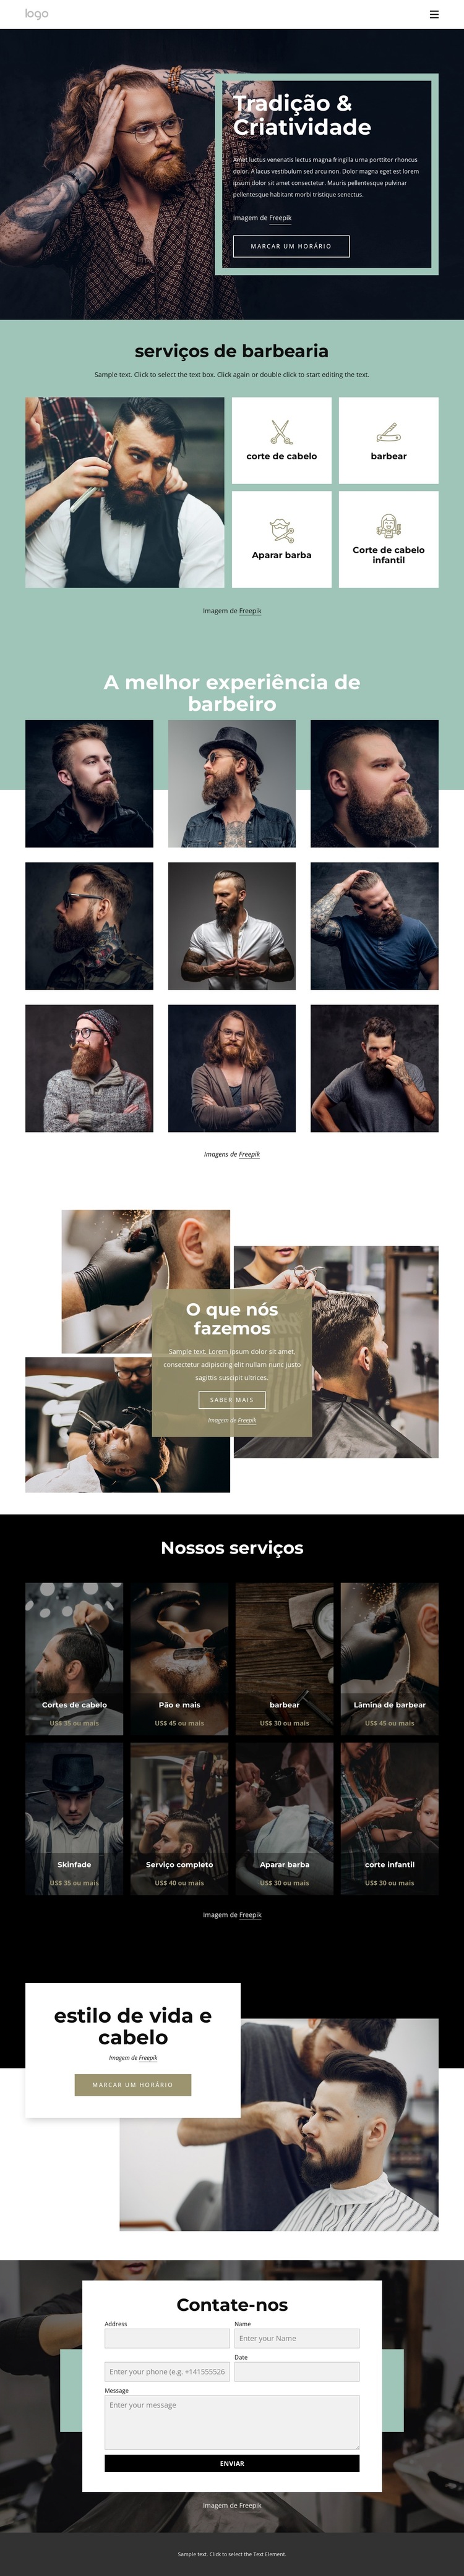 salão de barbeiro público Modelo de site